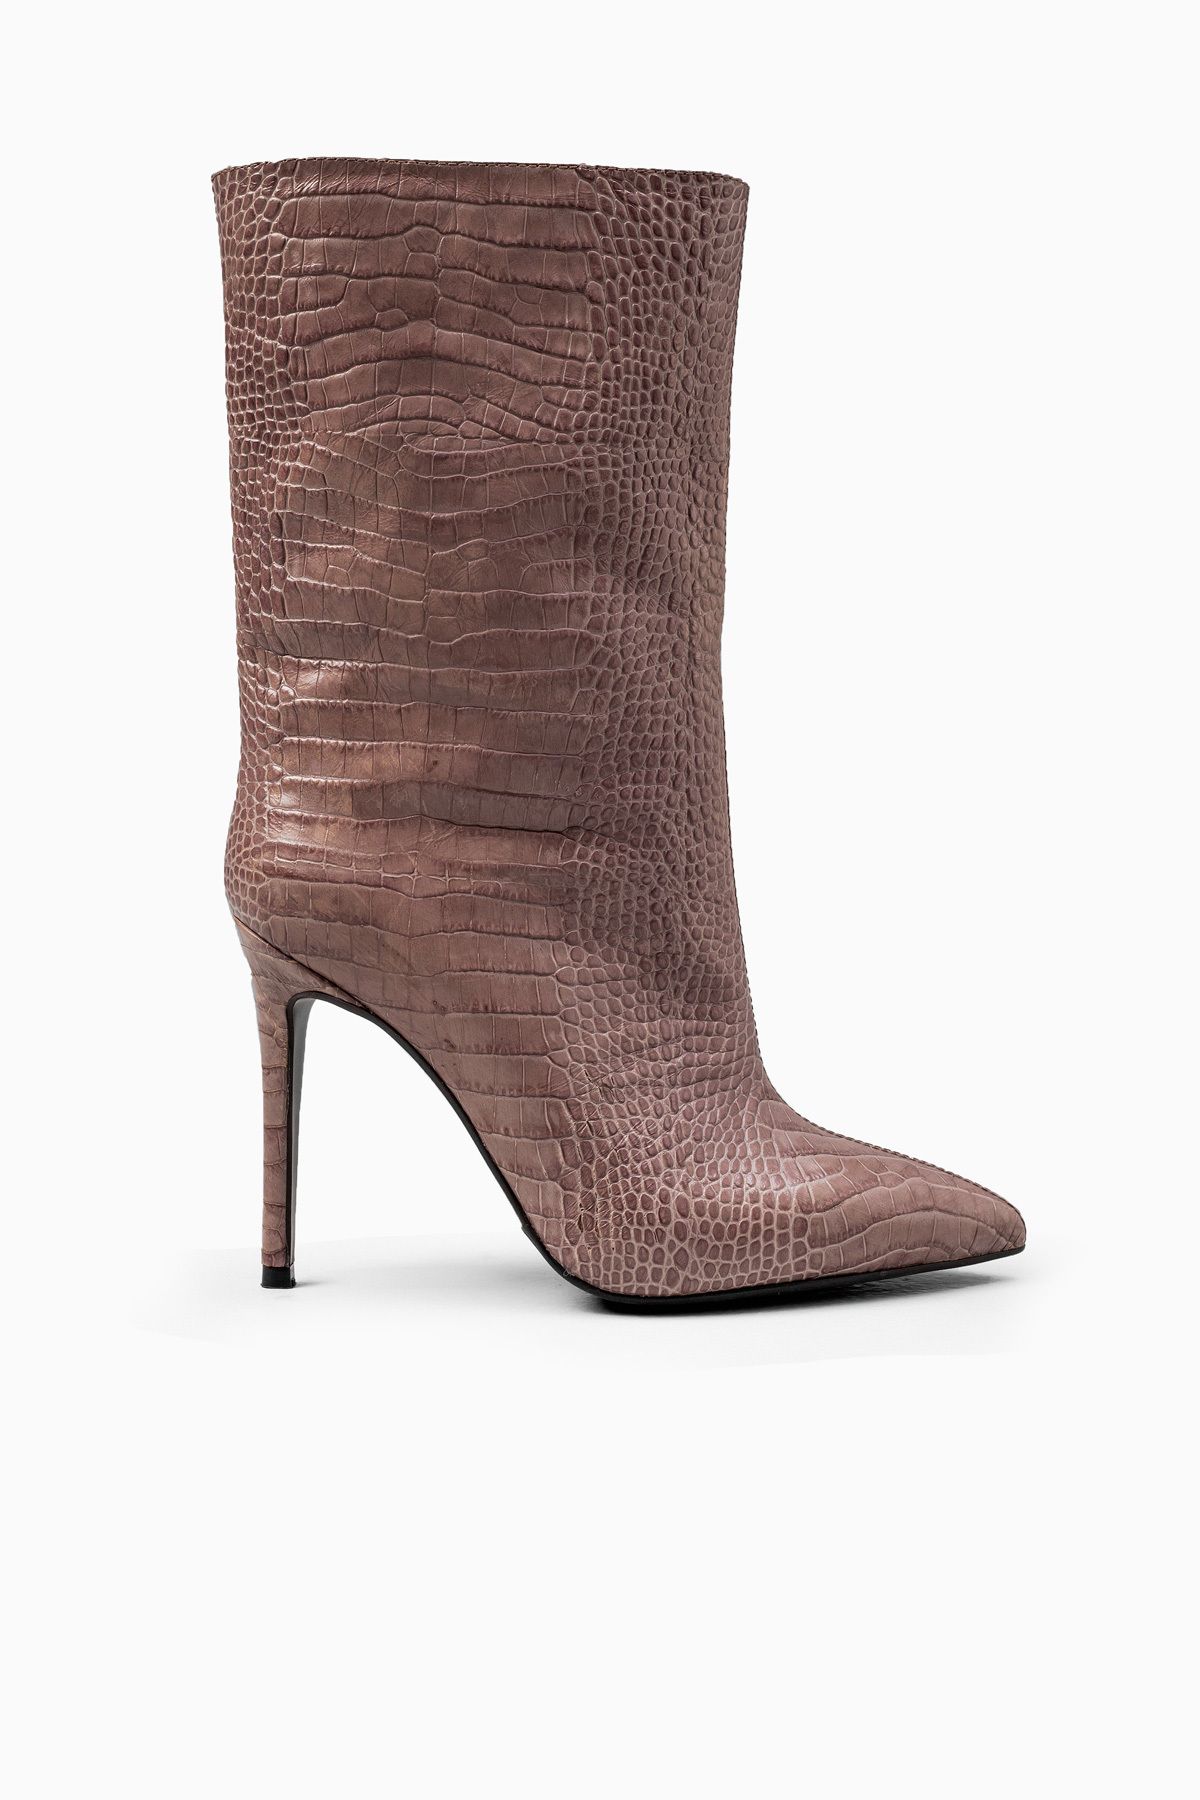 Milaura Luxury Retro Vizon Kroko Desenli Kadın Yarım Çizme Bot Uzun Topuklu 20128